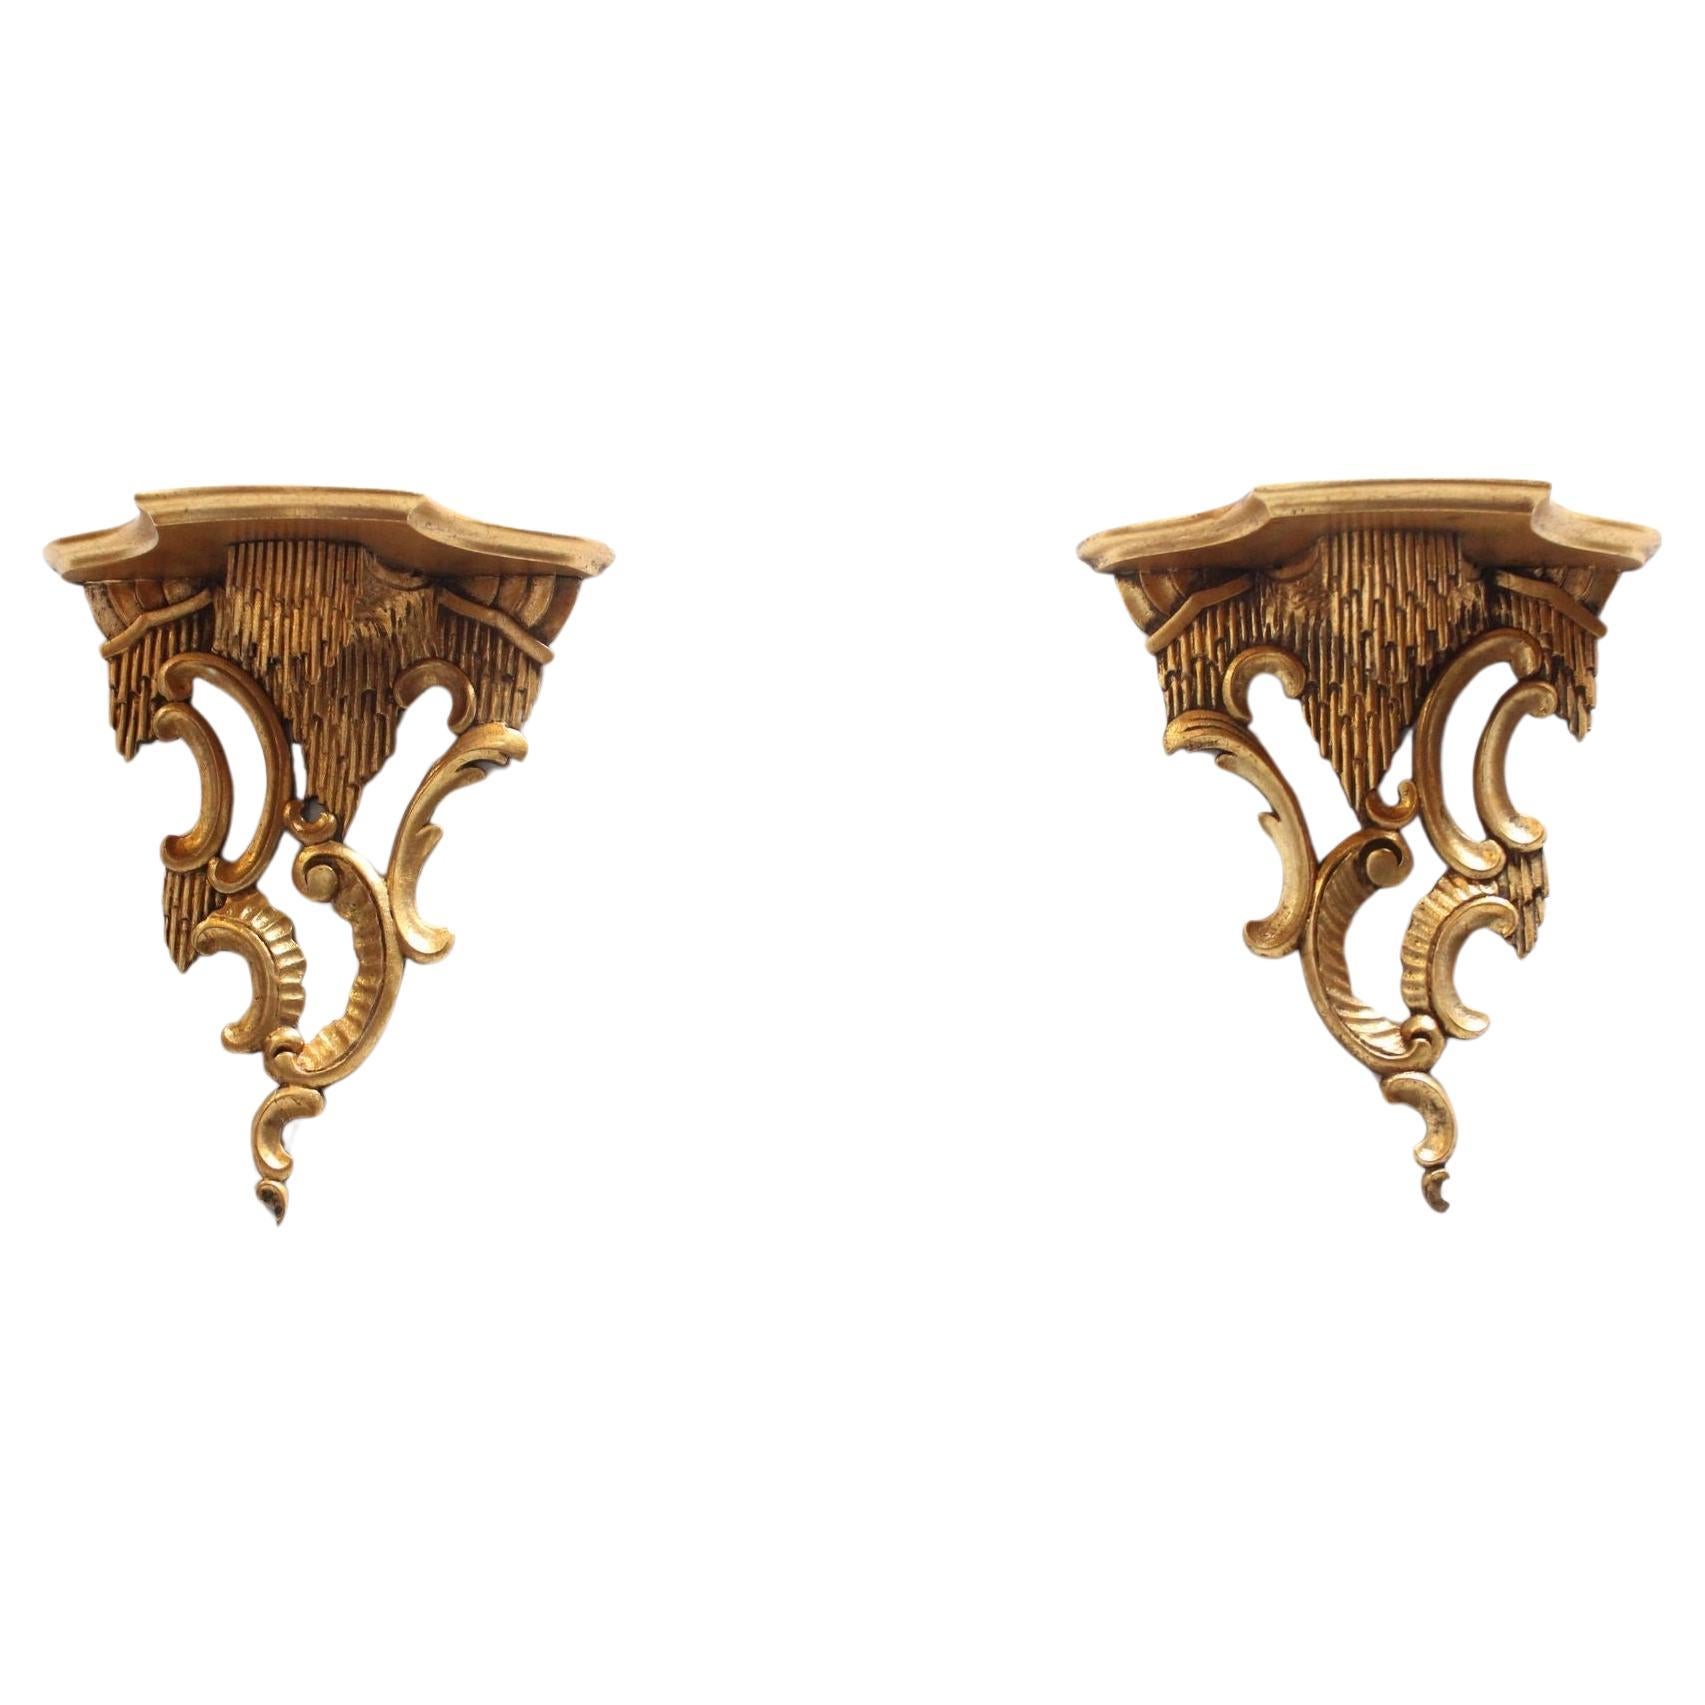 Paire de supports muraux italiens de style rococo en bois doré rocaille